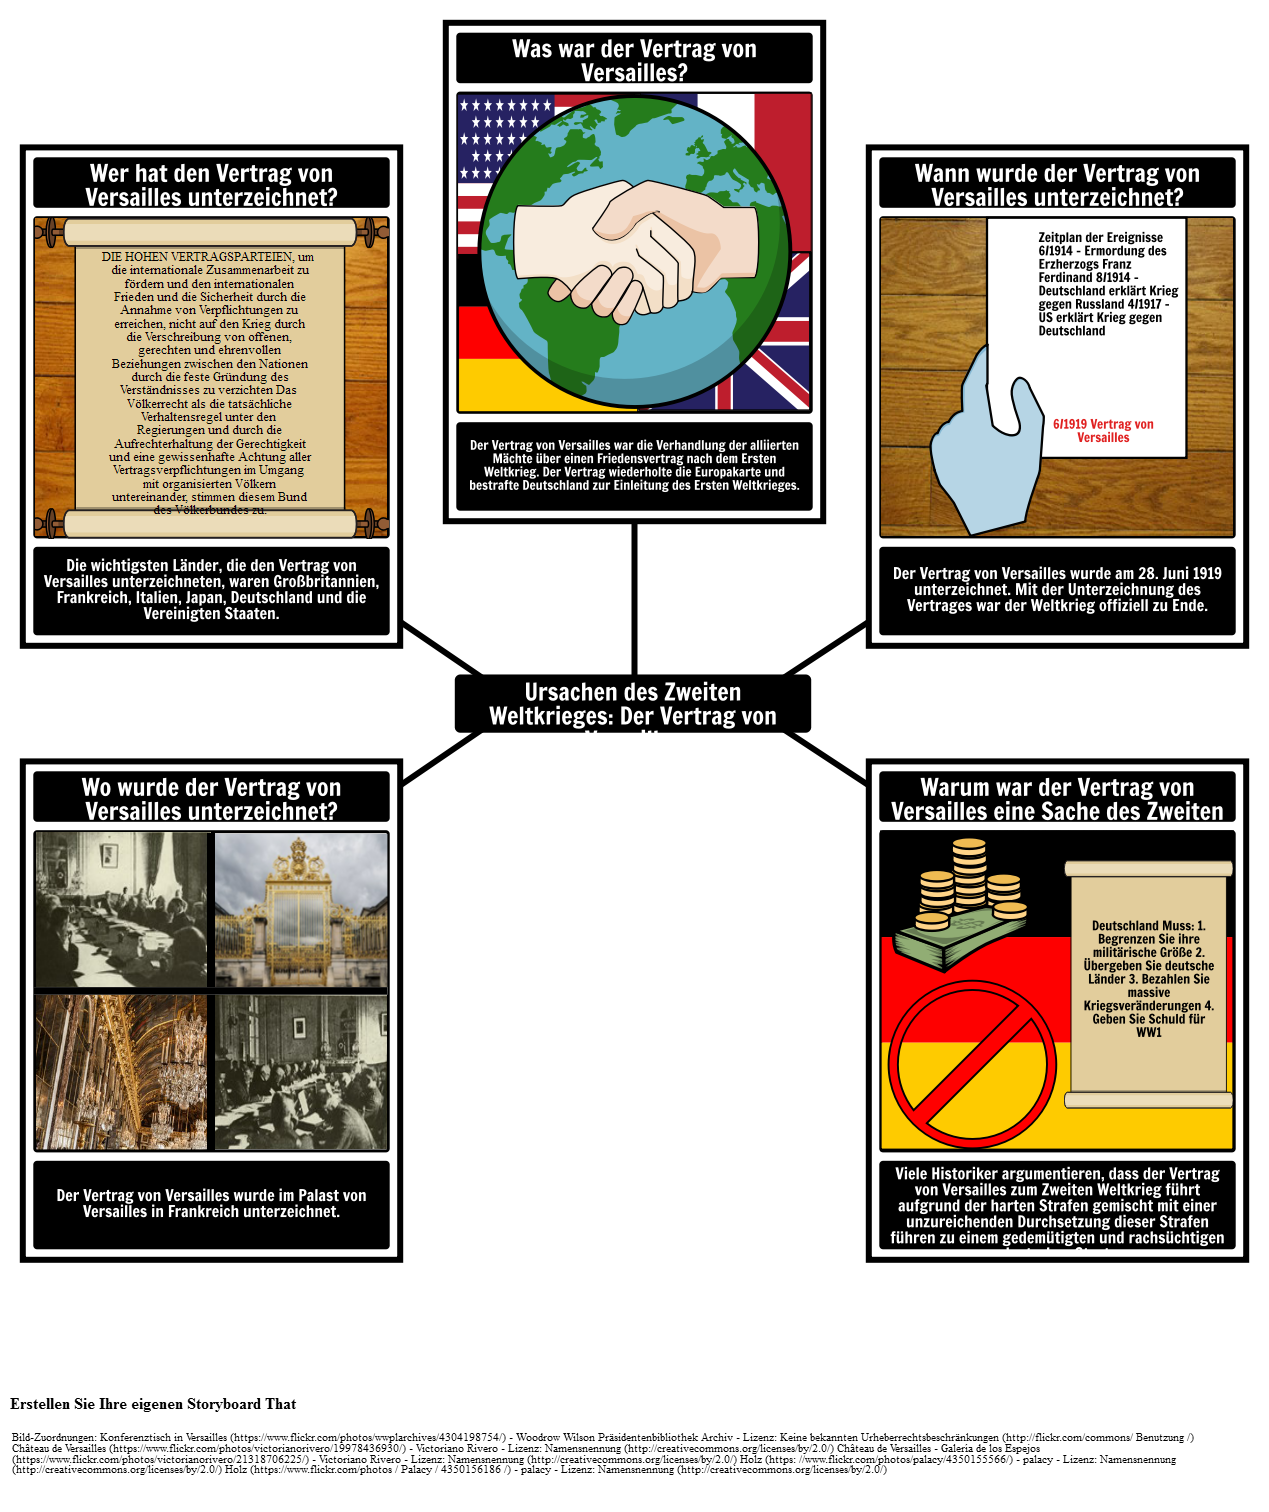 Ursachen des Zweiten Weltkriegs